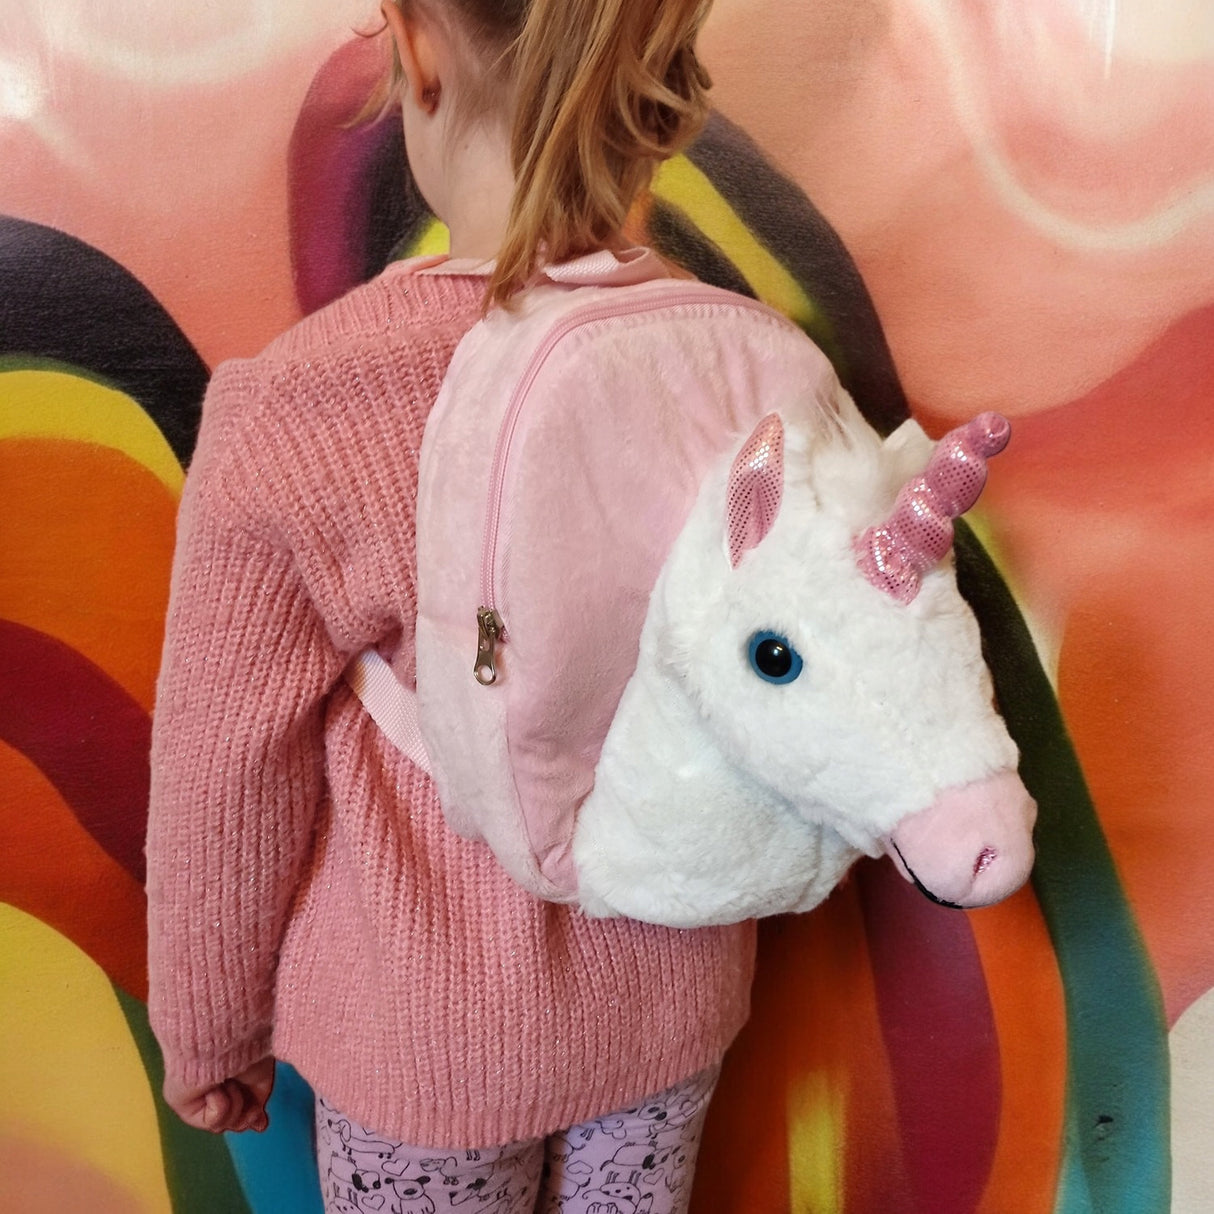 Einhorn Rucksack mit Plüschkopf Unicorn Kinderrucksack